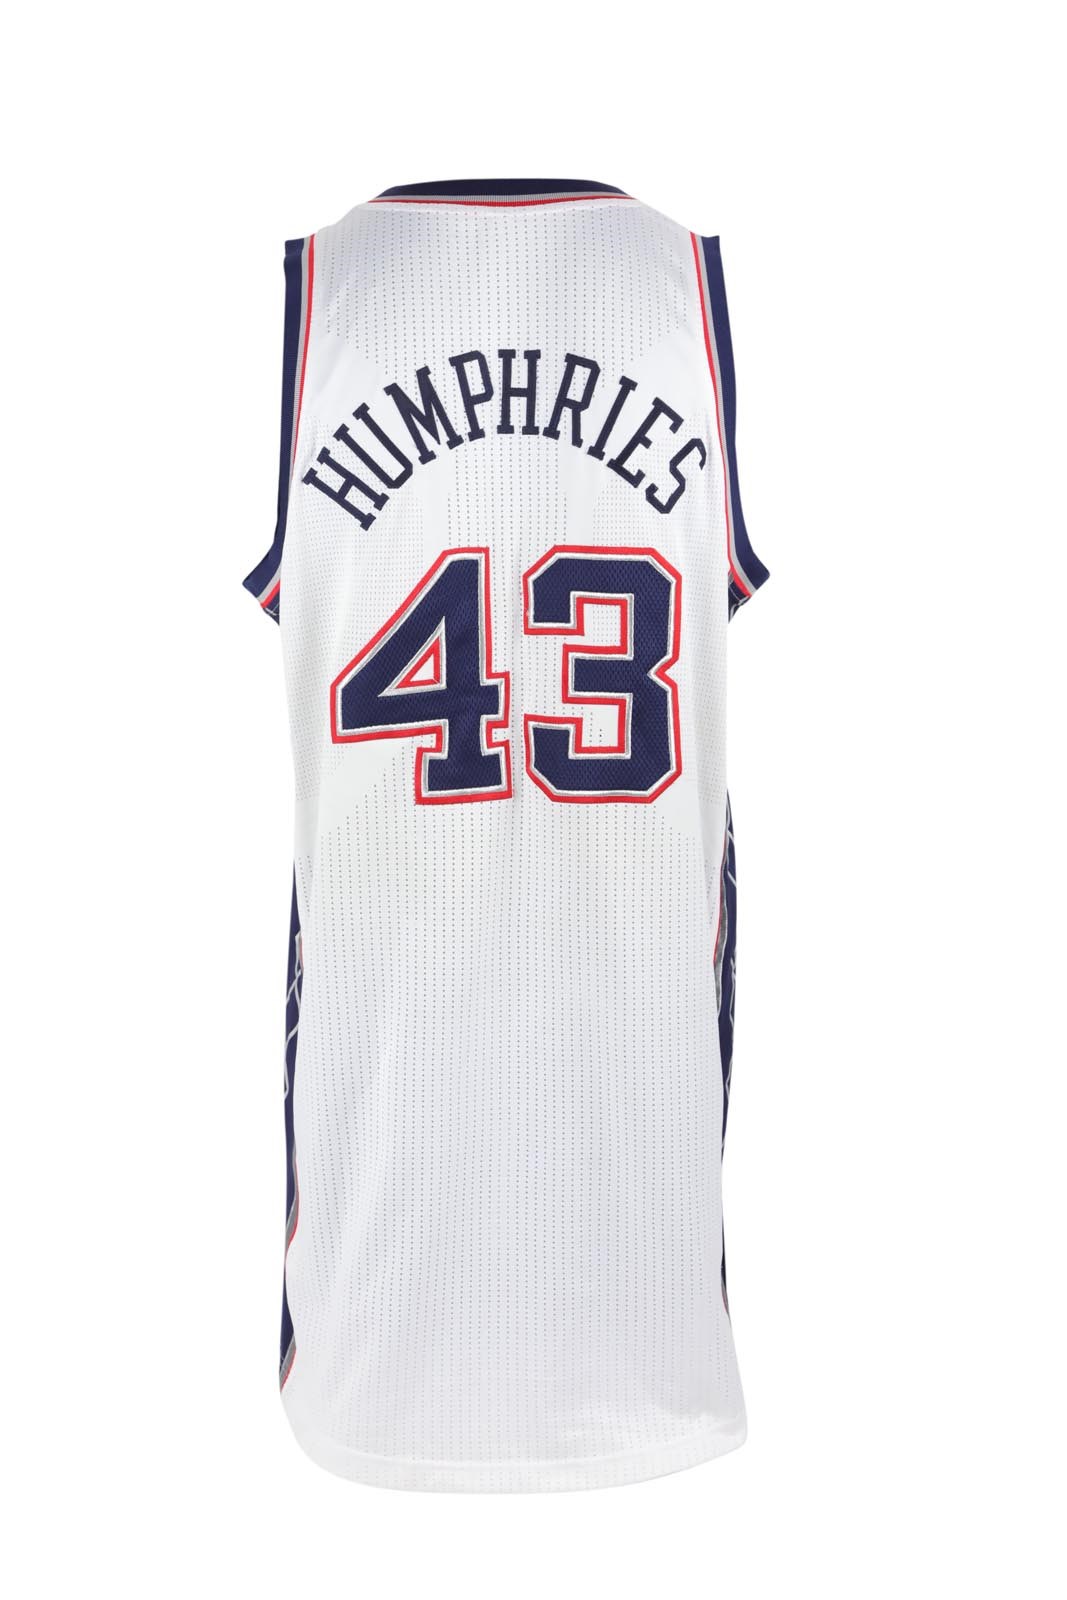 2011-12 Kris Humphries Nets Game Worn Jersey - 35th Anniversary Patch (Steiner)